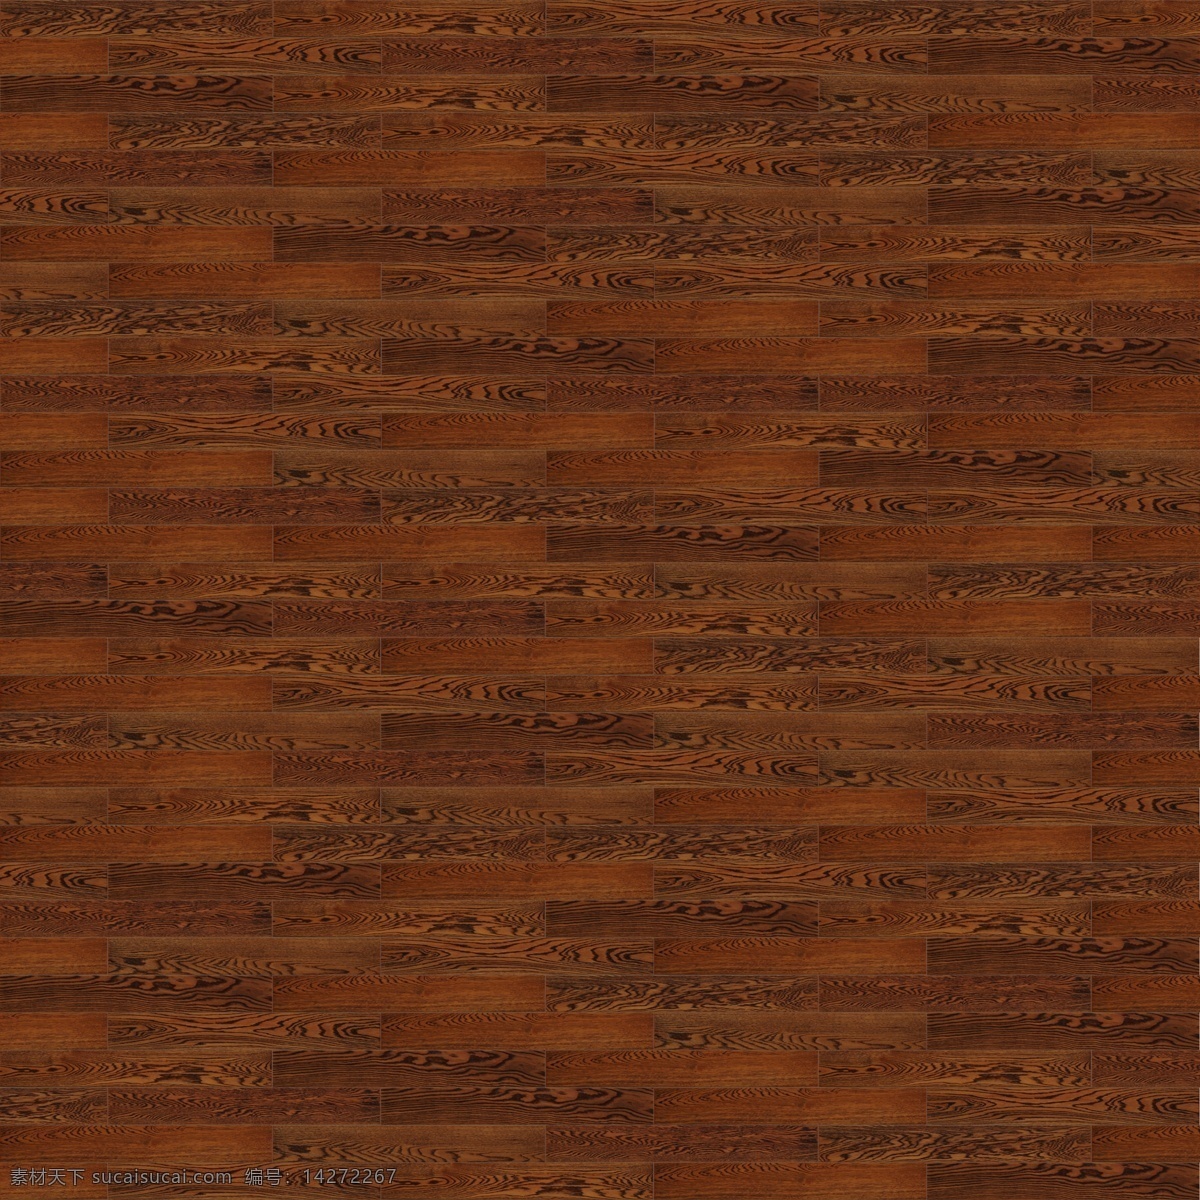 木地板贴图 木纹 木地板 复古 高清 贴图 背景底纹 底纹边框